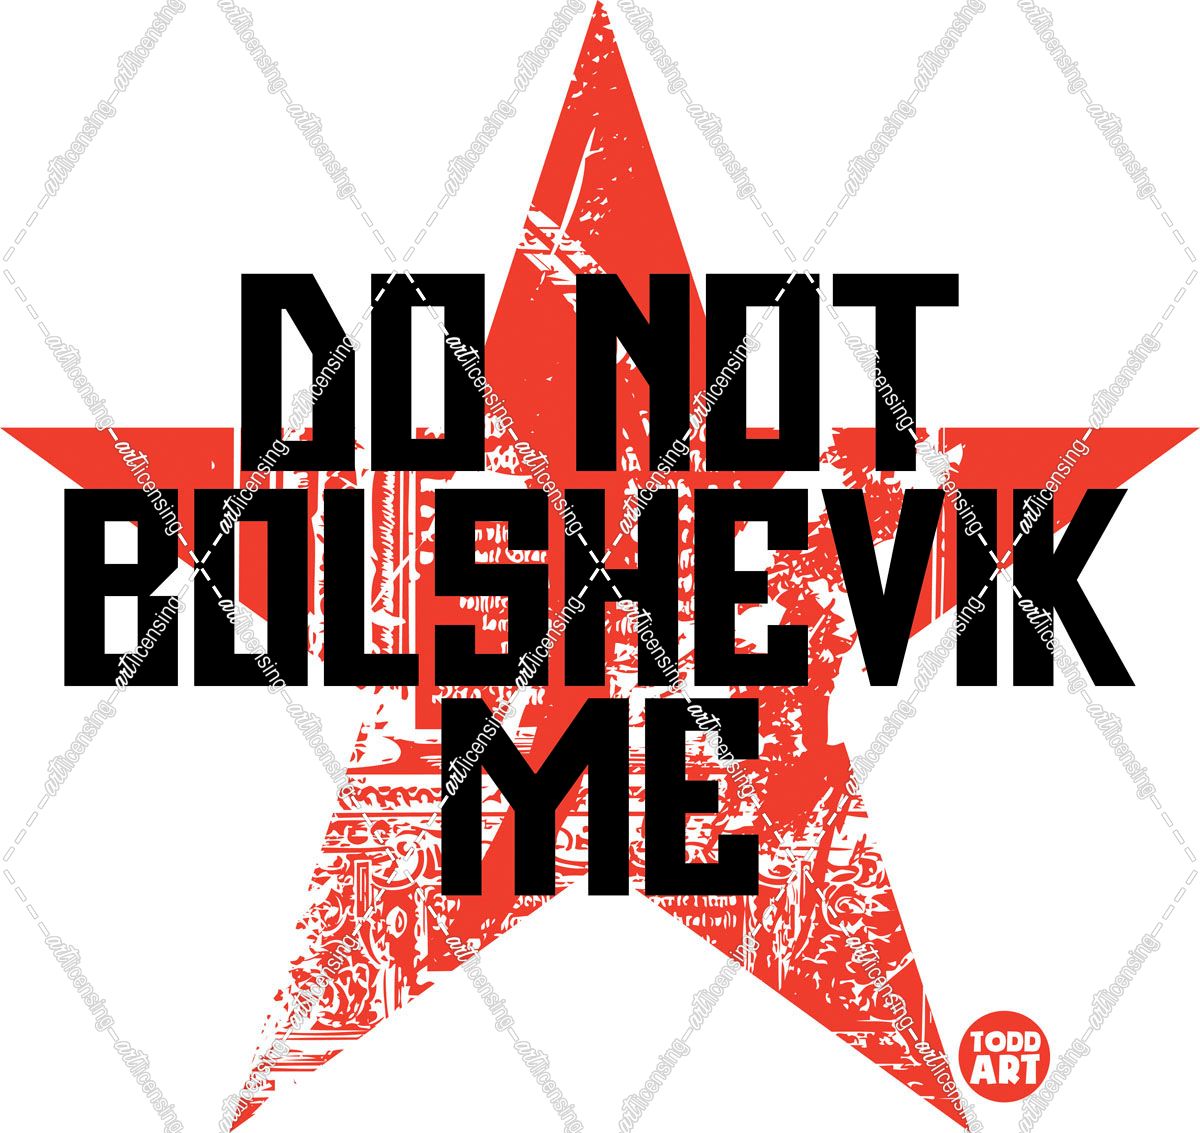 Do Not Bolshevik Me